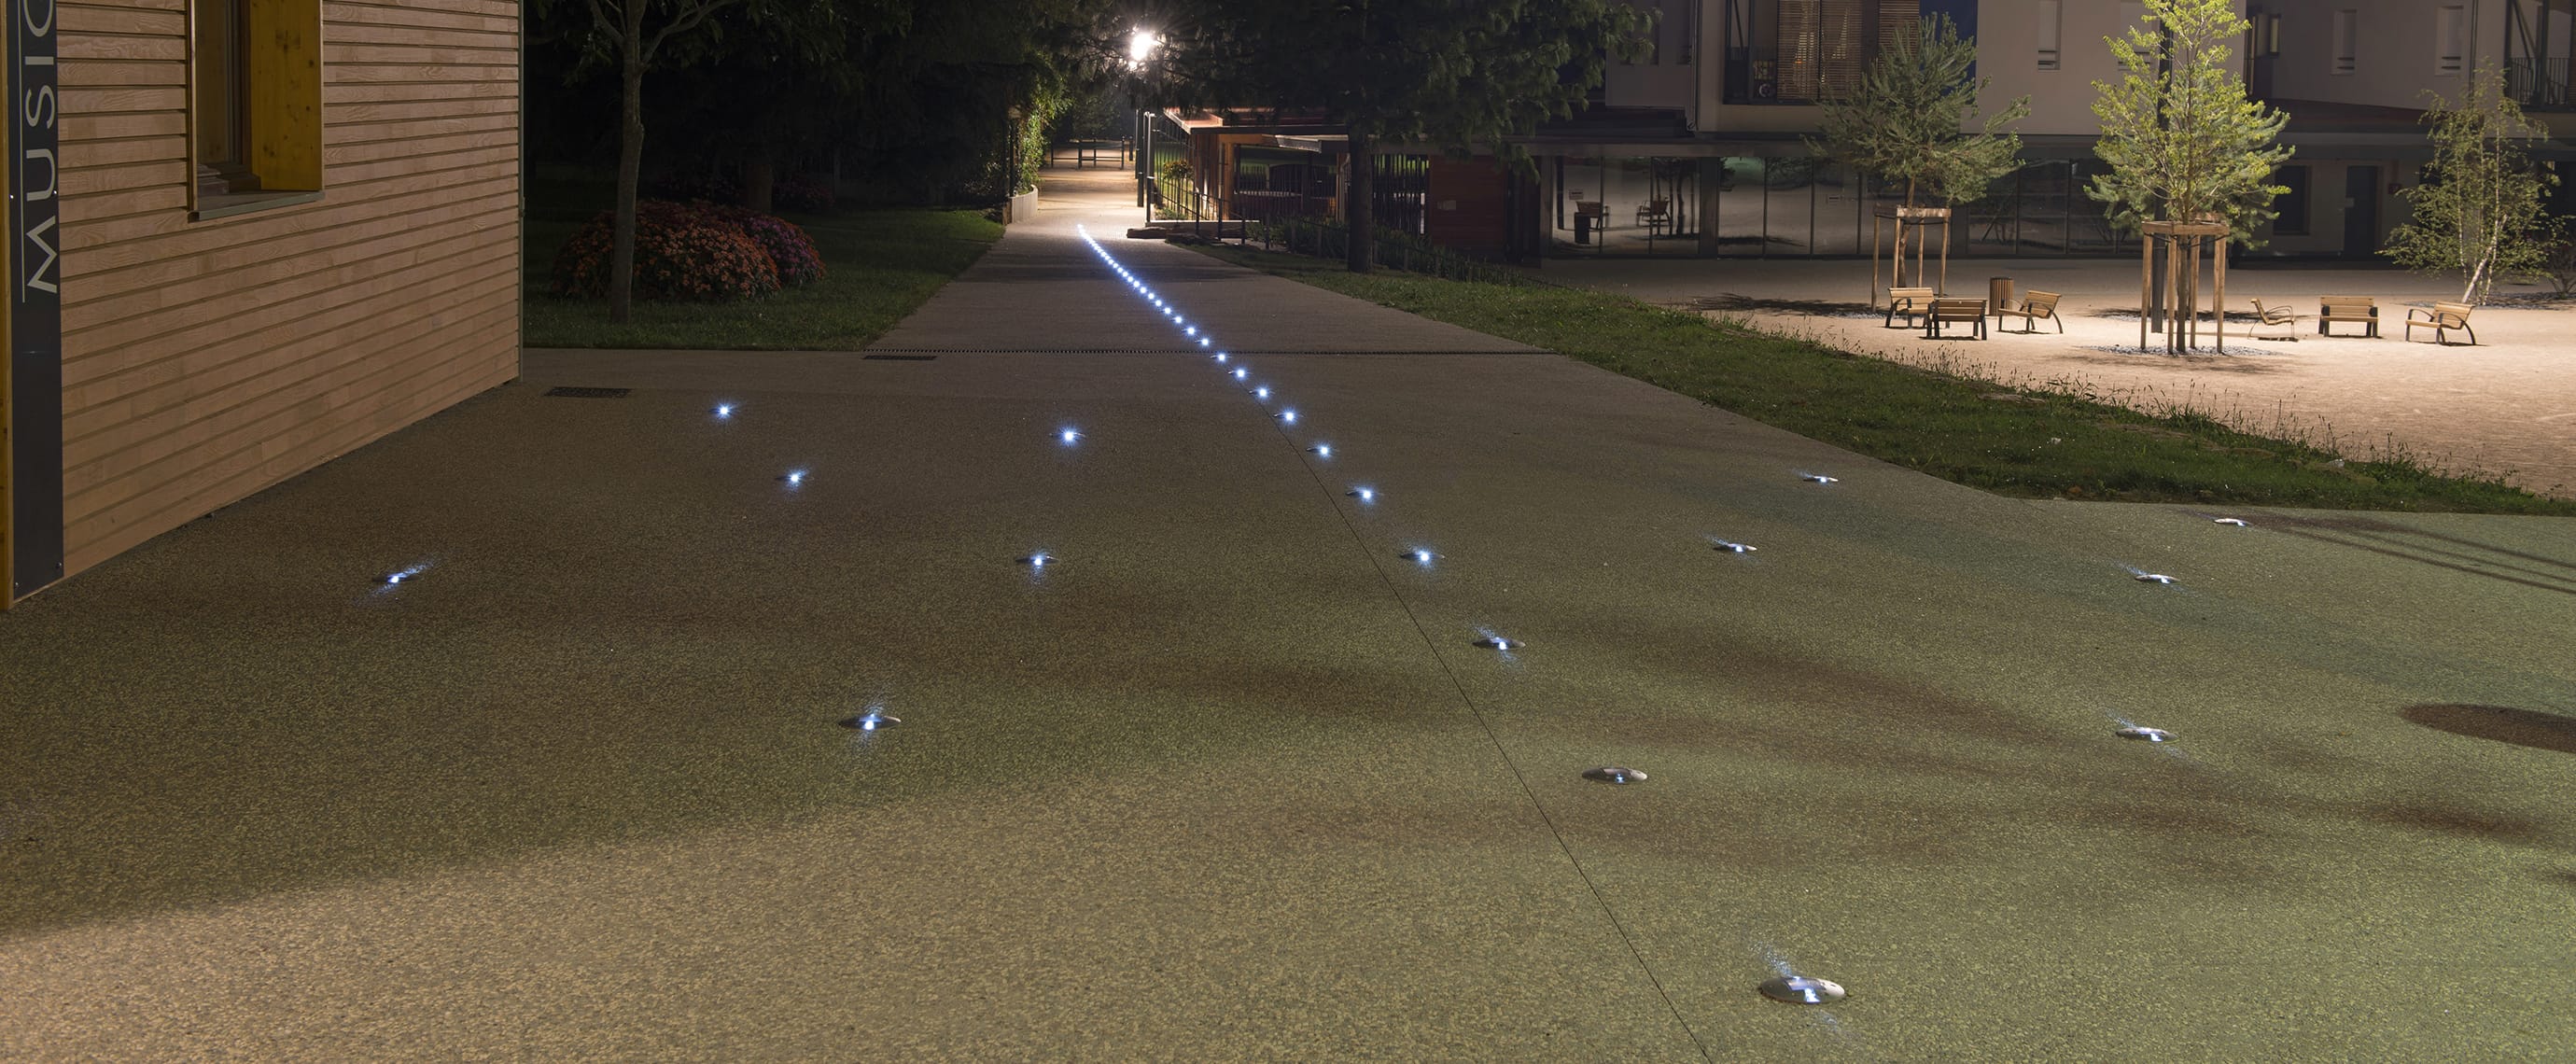 Plot solaire piéton sur promenade balisage LED ECO-143 Eco-Innov